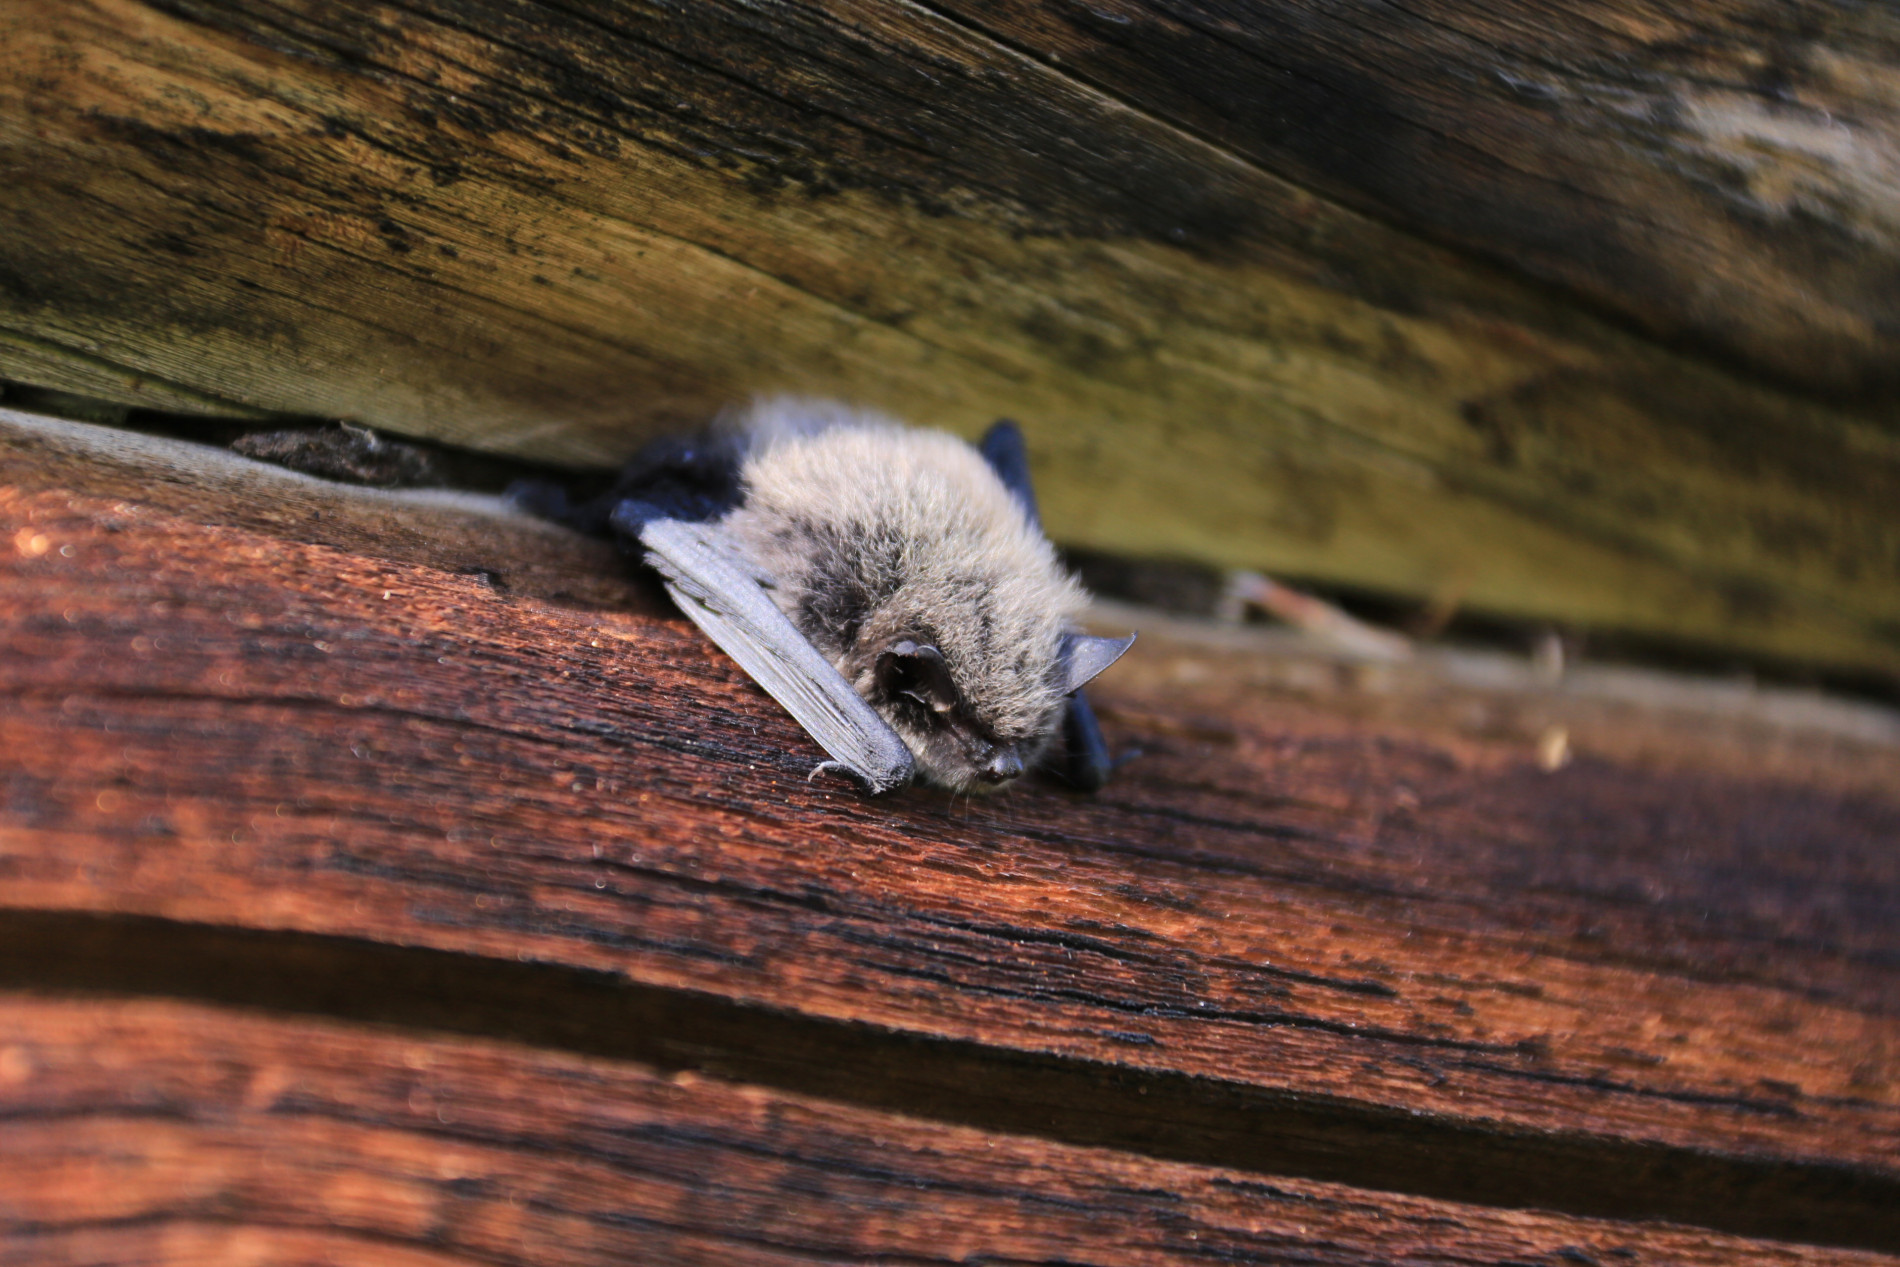 Необычная дневная встреча с летучей мышью. Фото Д. Д. Жетикова